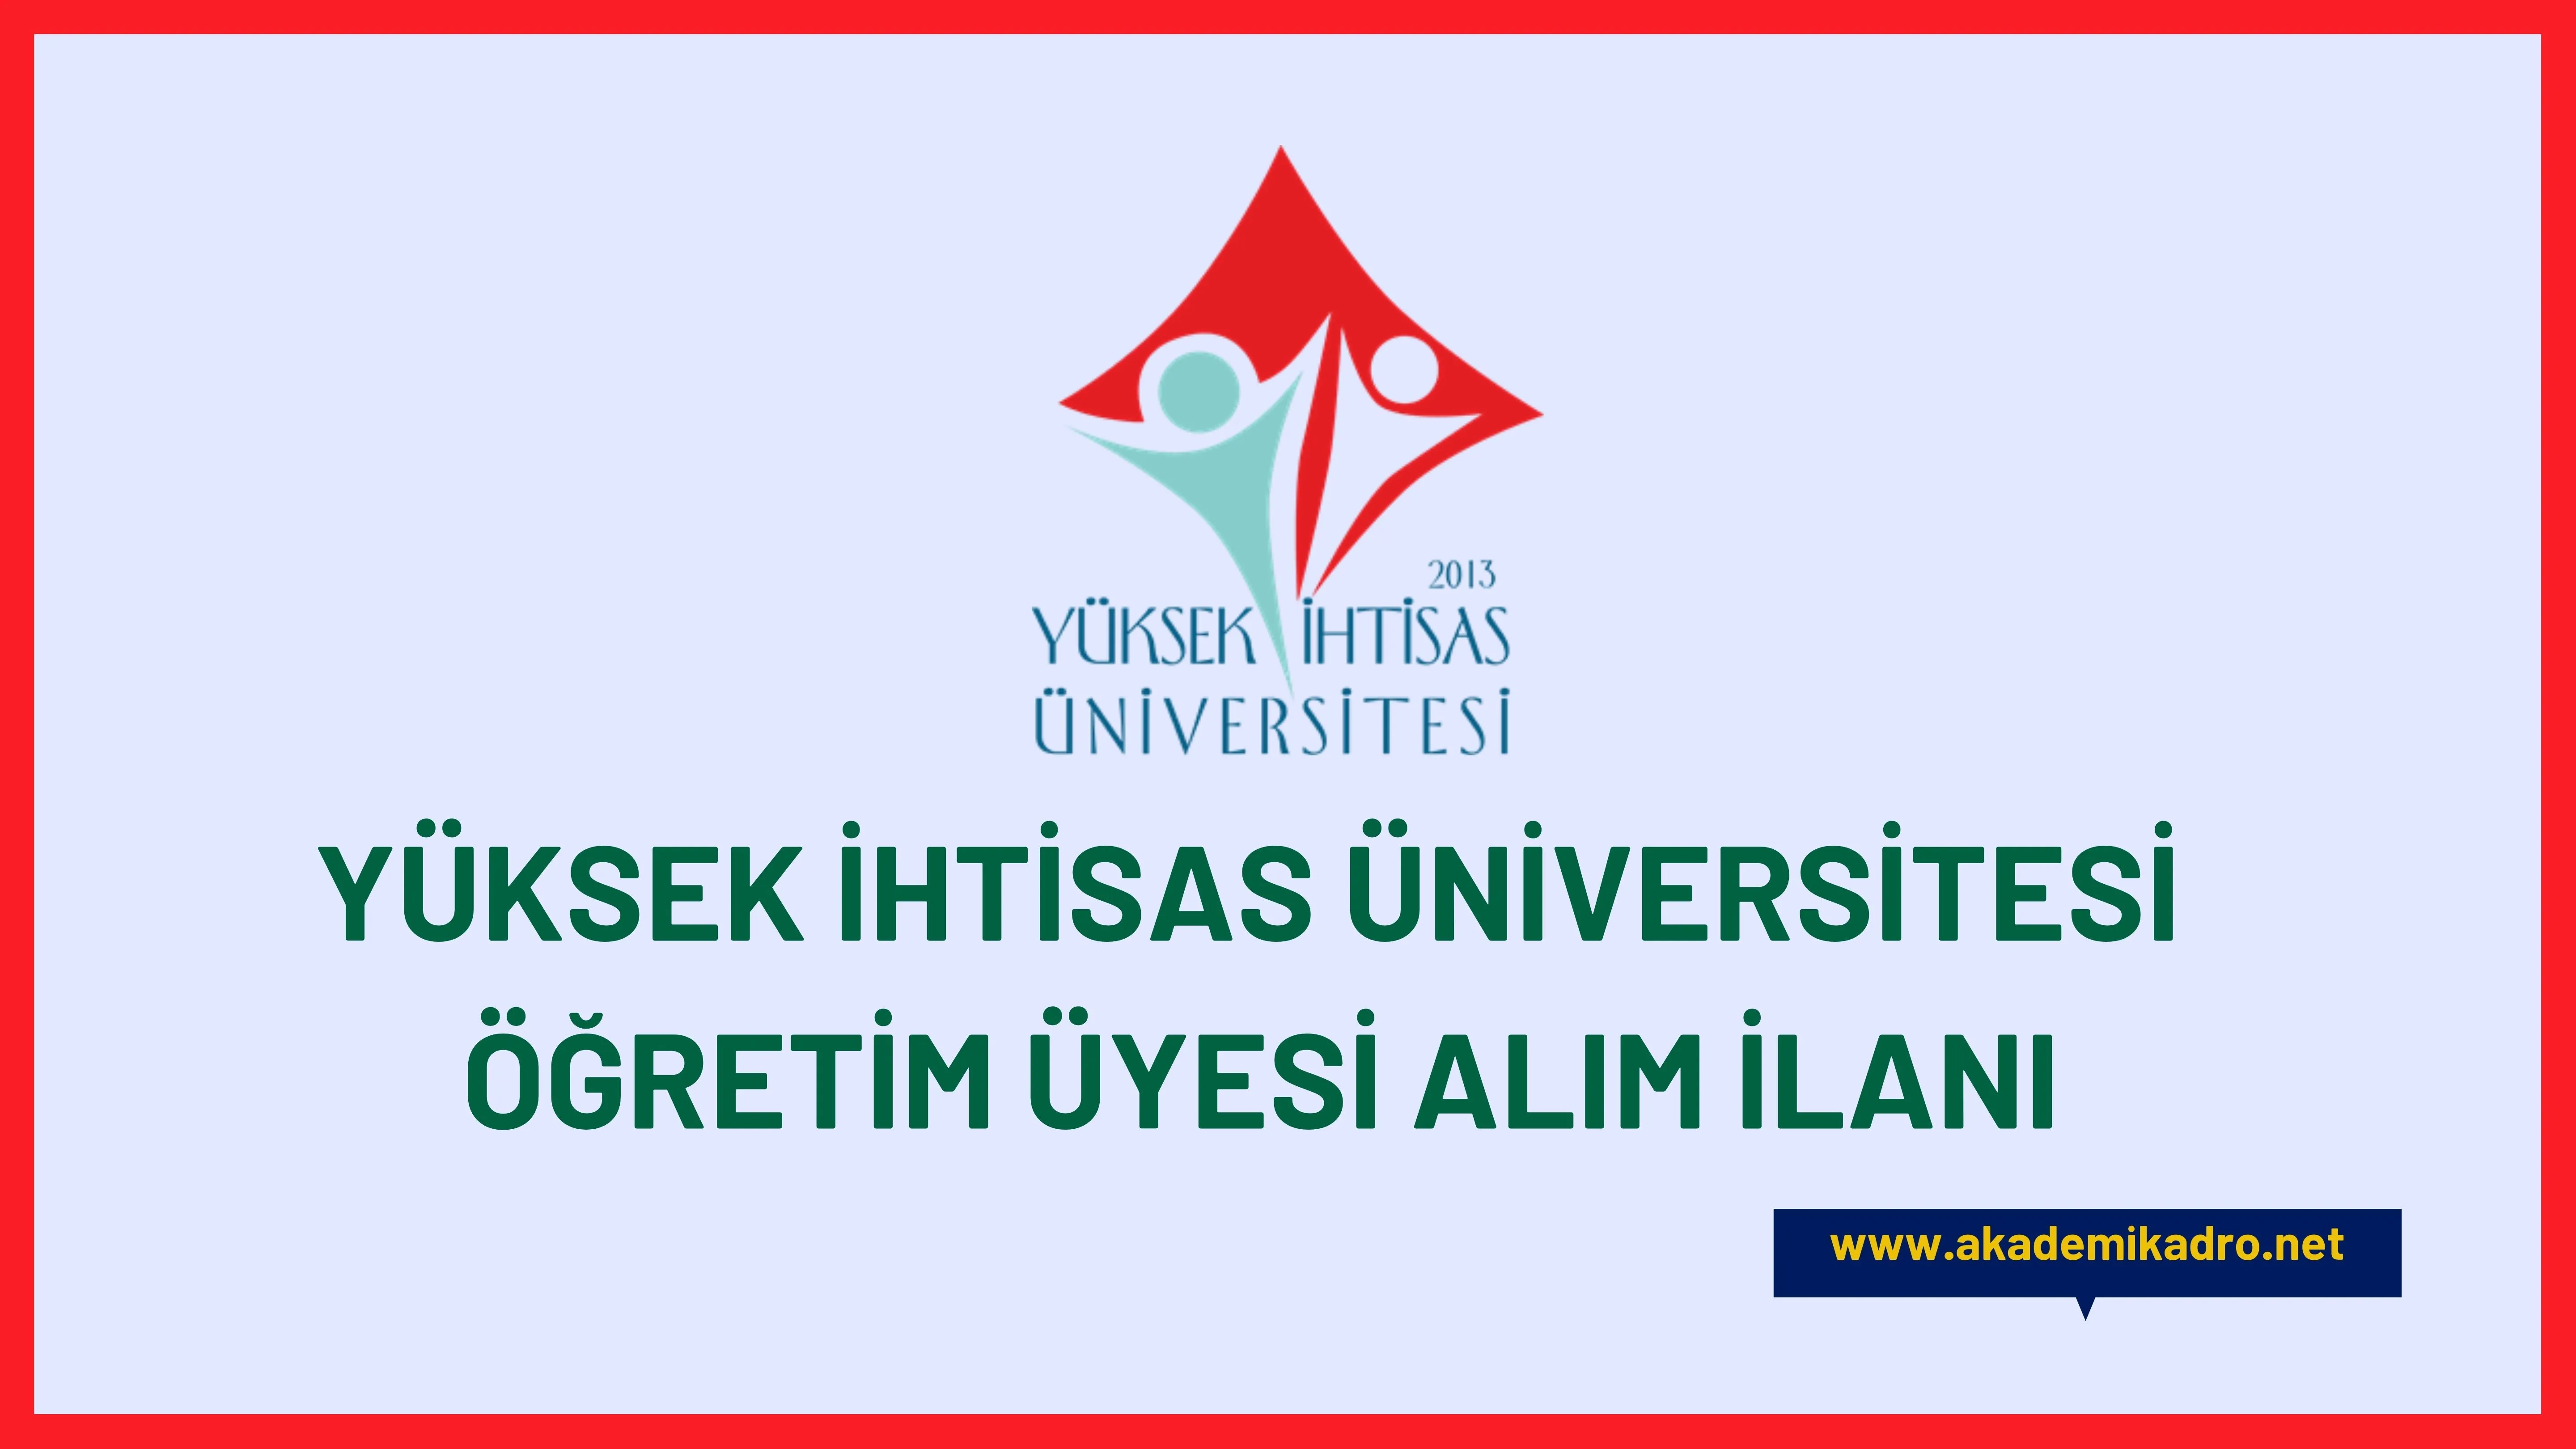 Yüksek İhtisas Üniversitesi birçok alandan 21 akademik personel alacak.